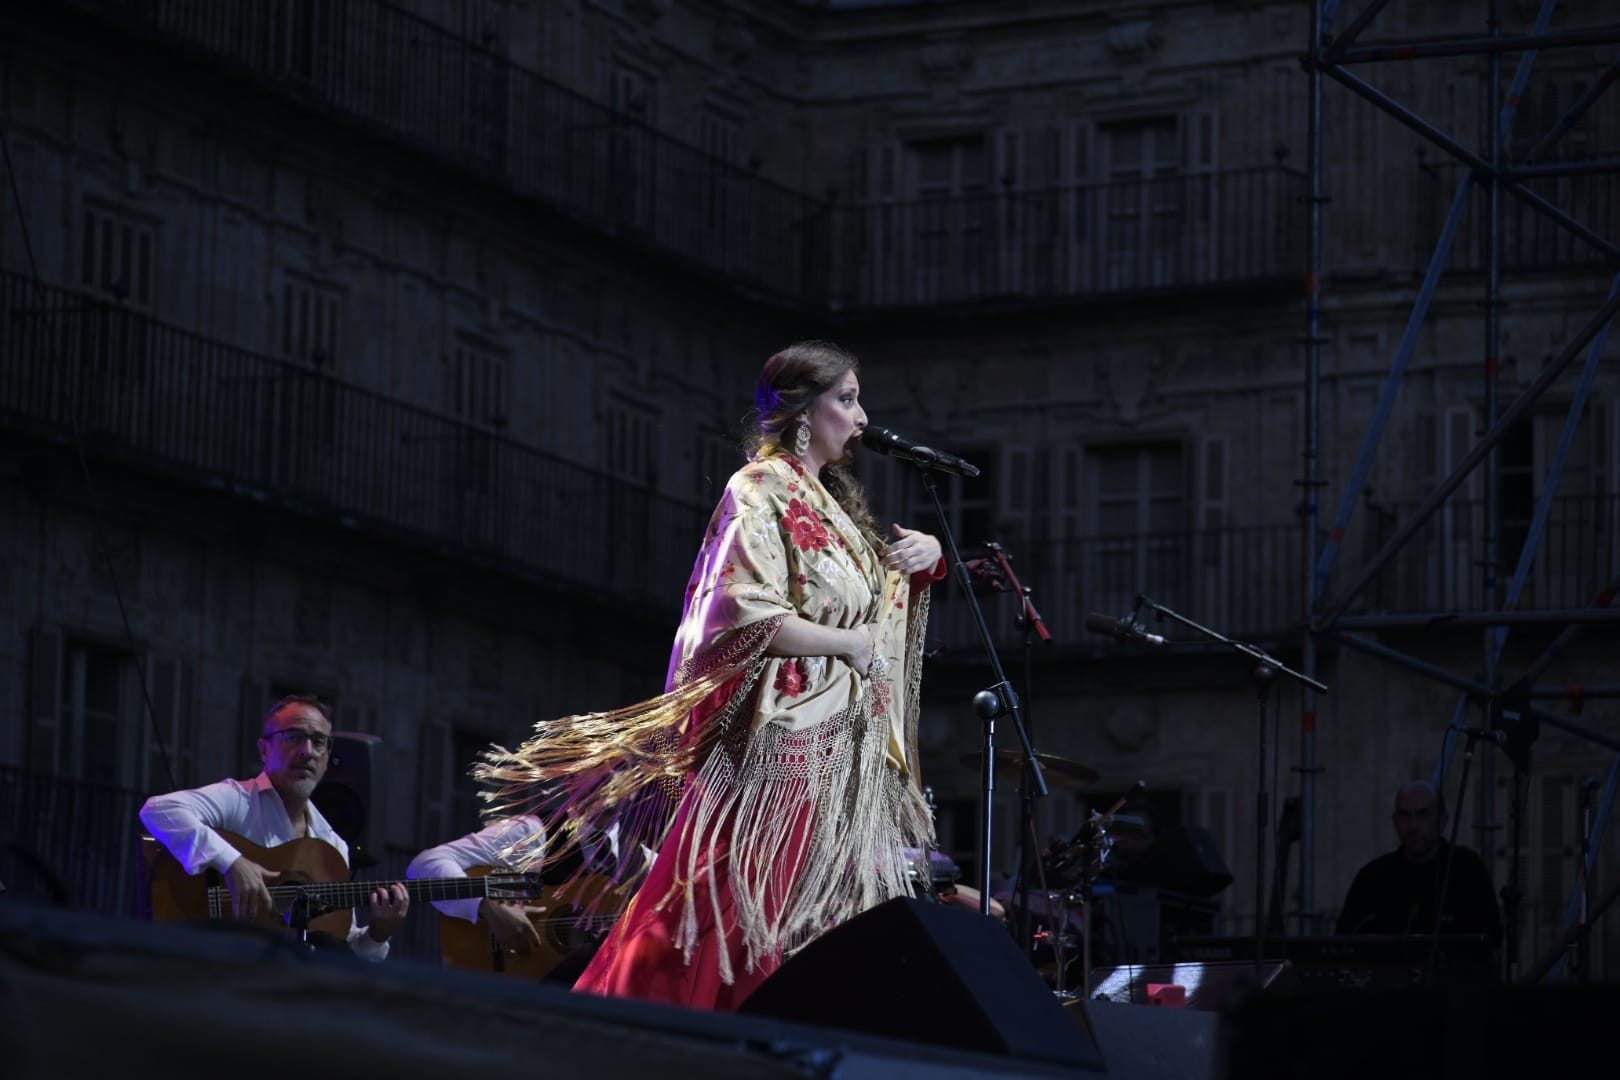 La cantaora Argentina, en concierto en la Plaza Mayor.